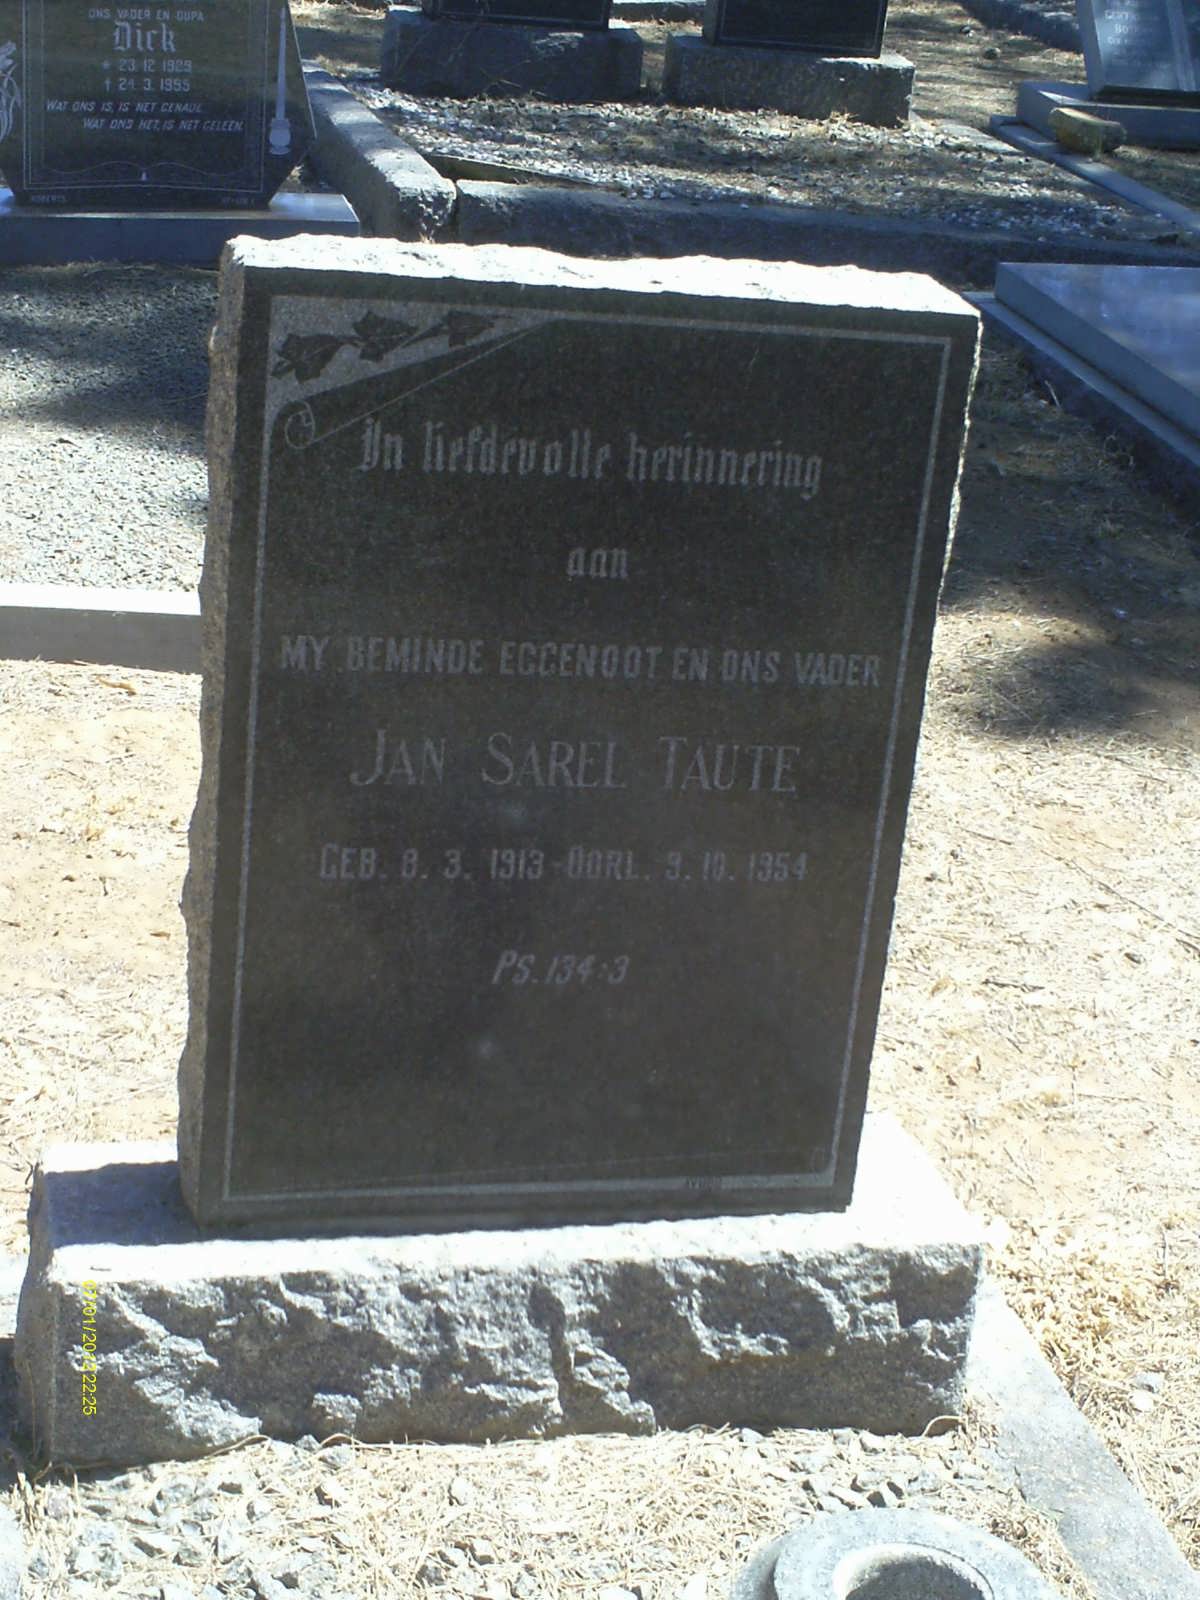 TAUTE Jan Sarel 1913-1954